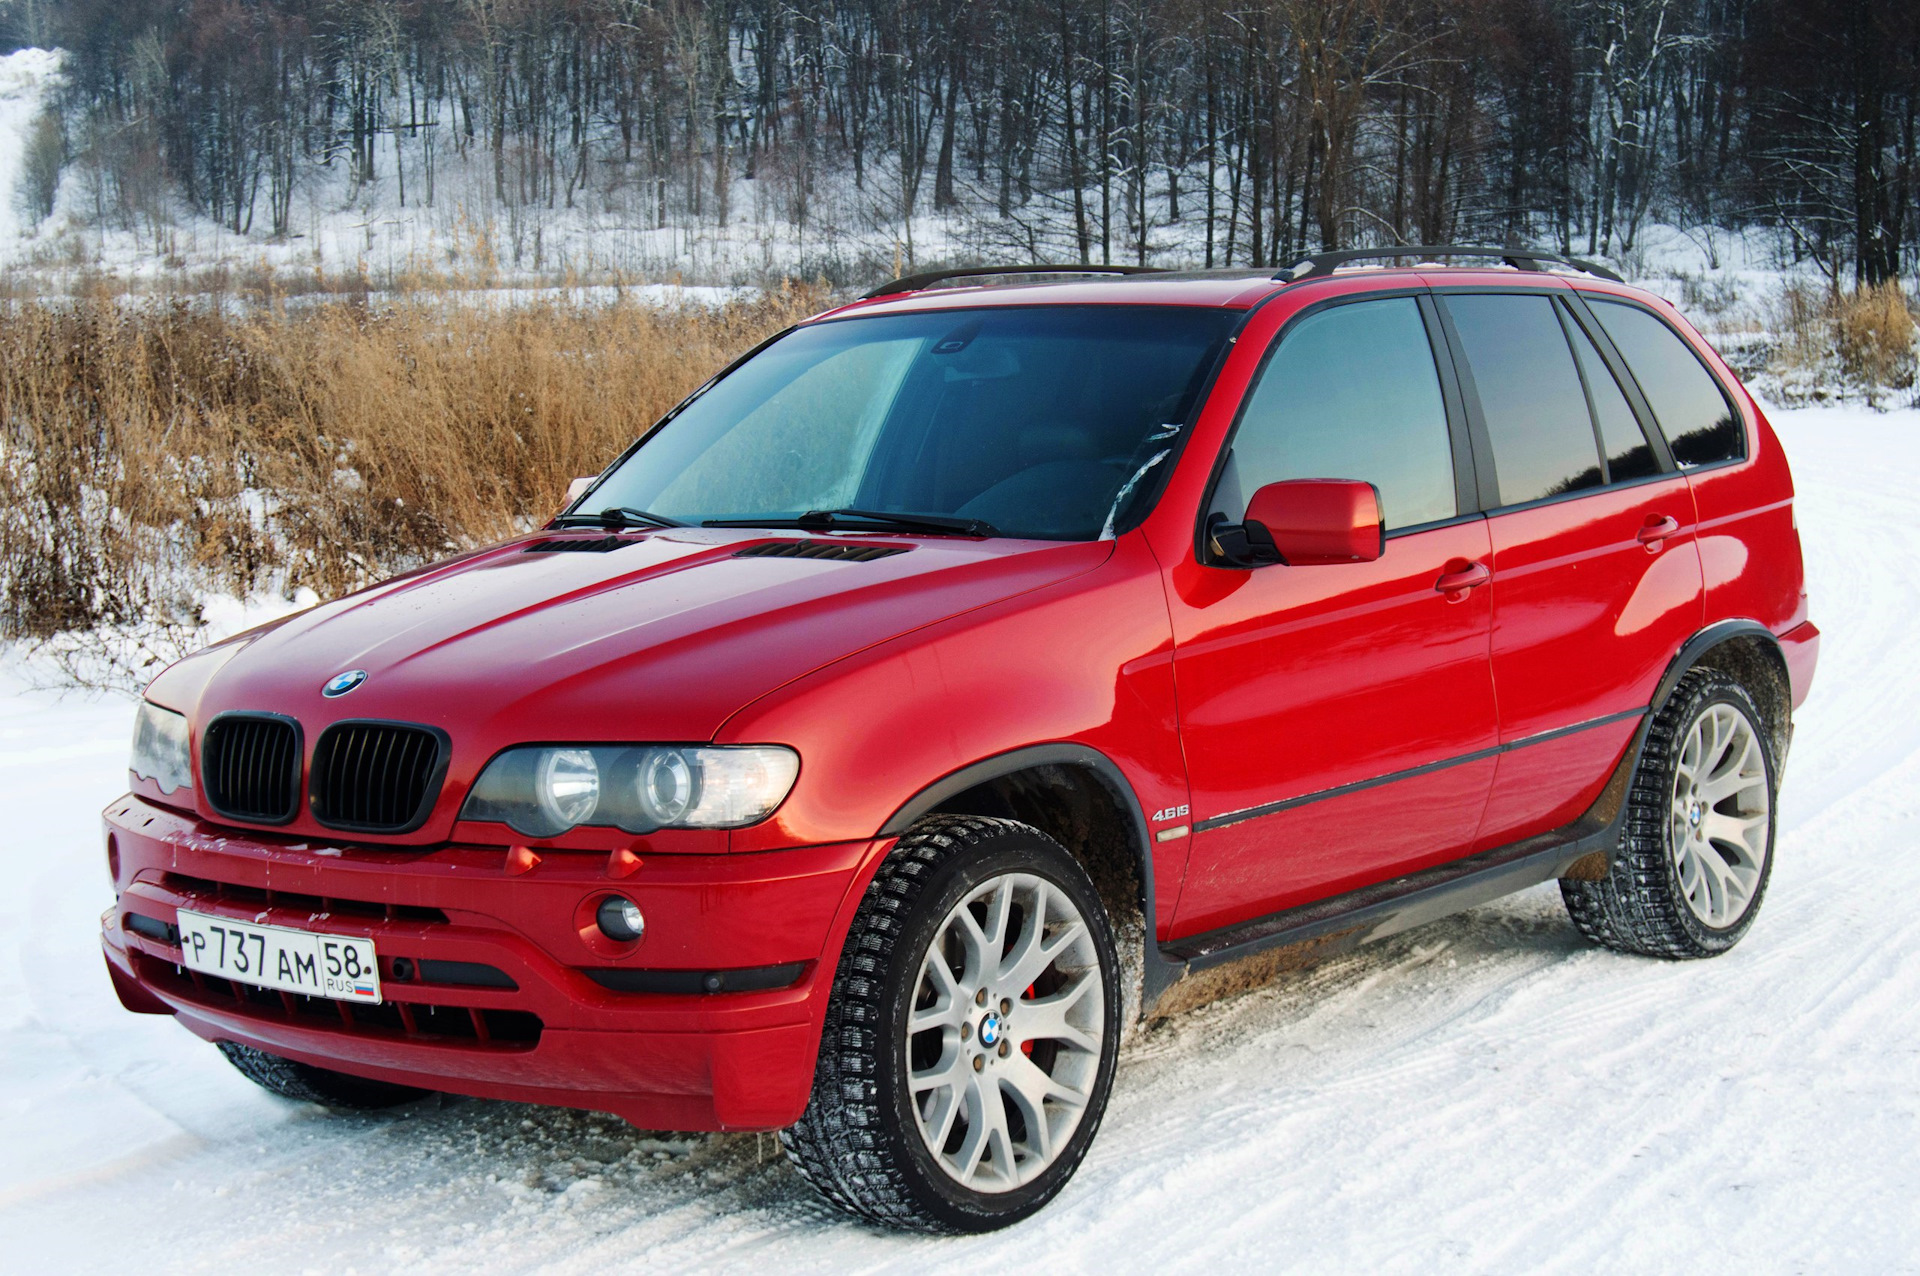 Bmw x5 2003. BMW x5 53. BMW x5 e53 дизель. BMW x5 e53 красный. БМВ x5 53 кузов.